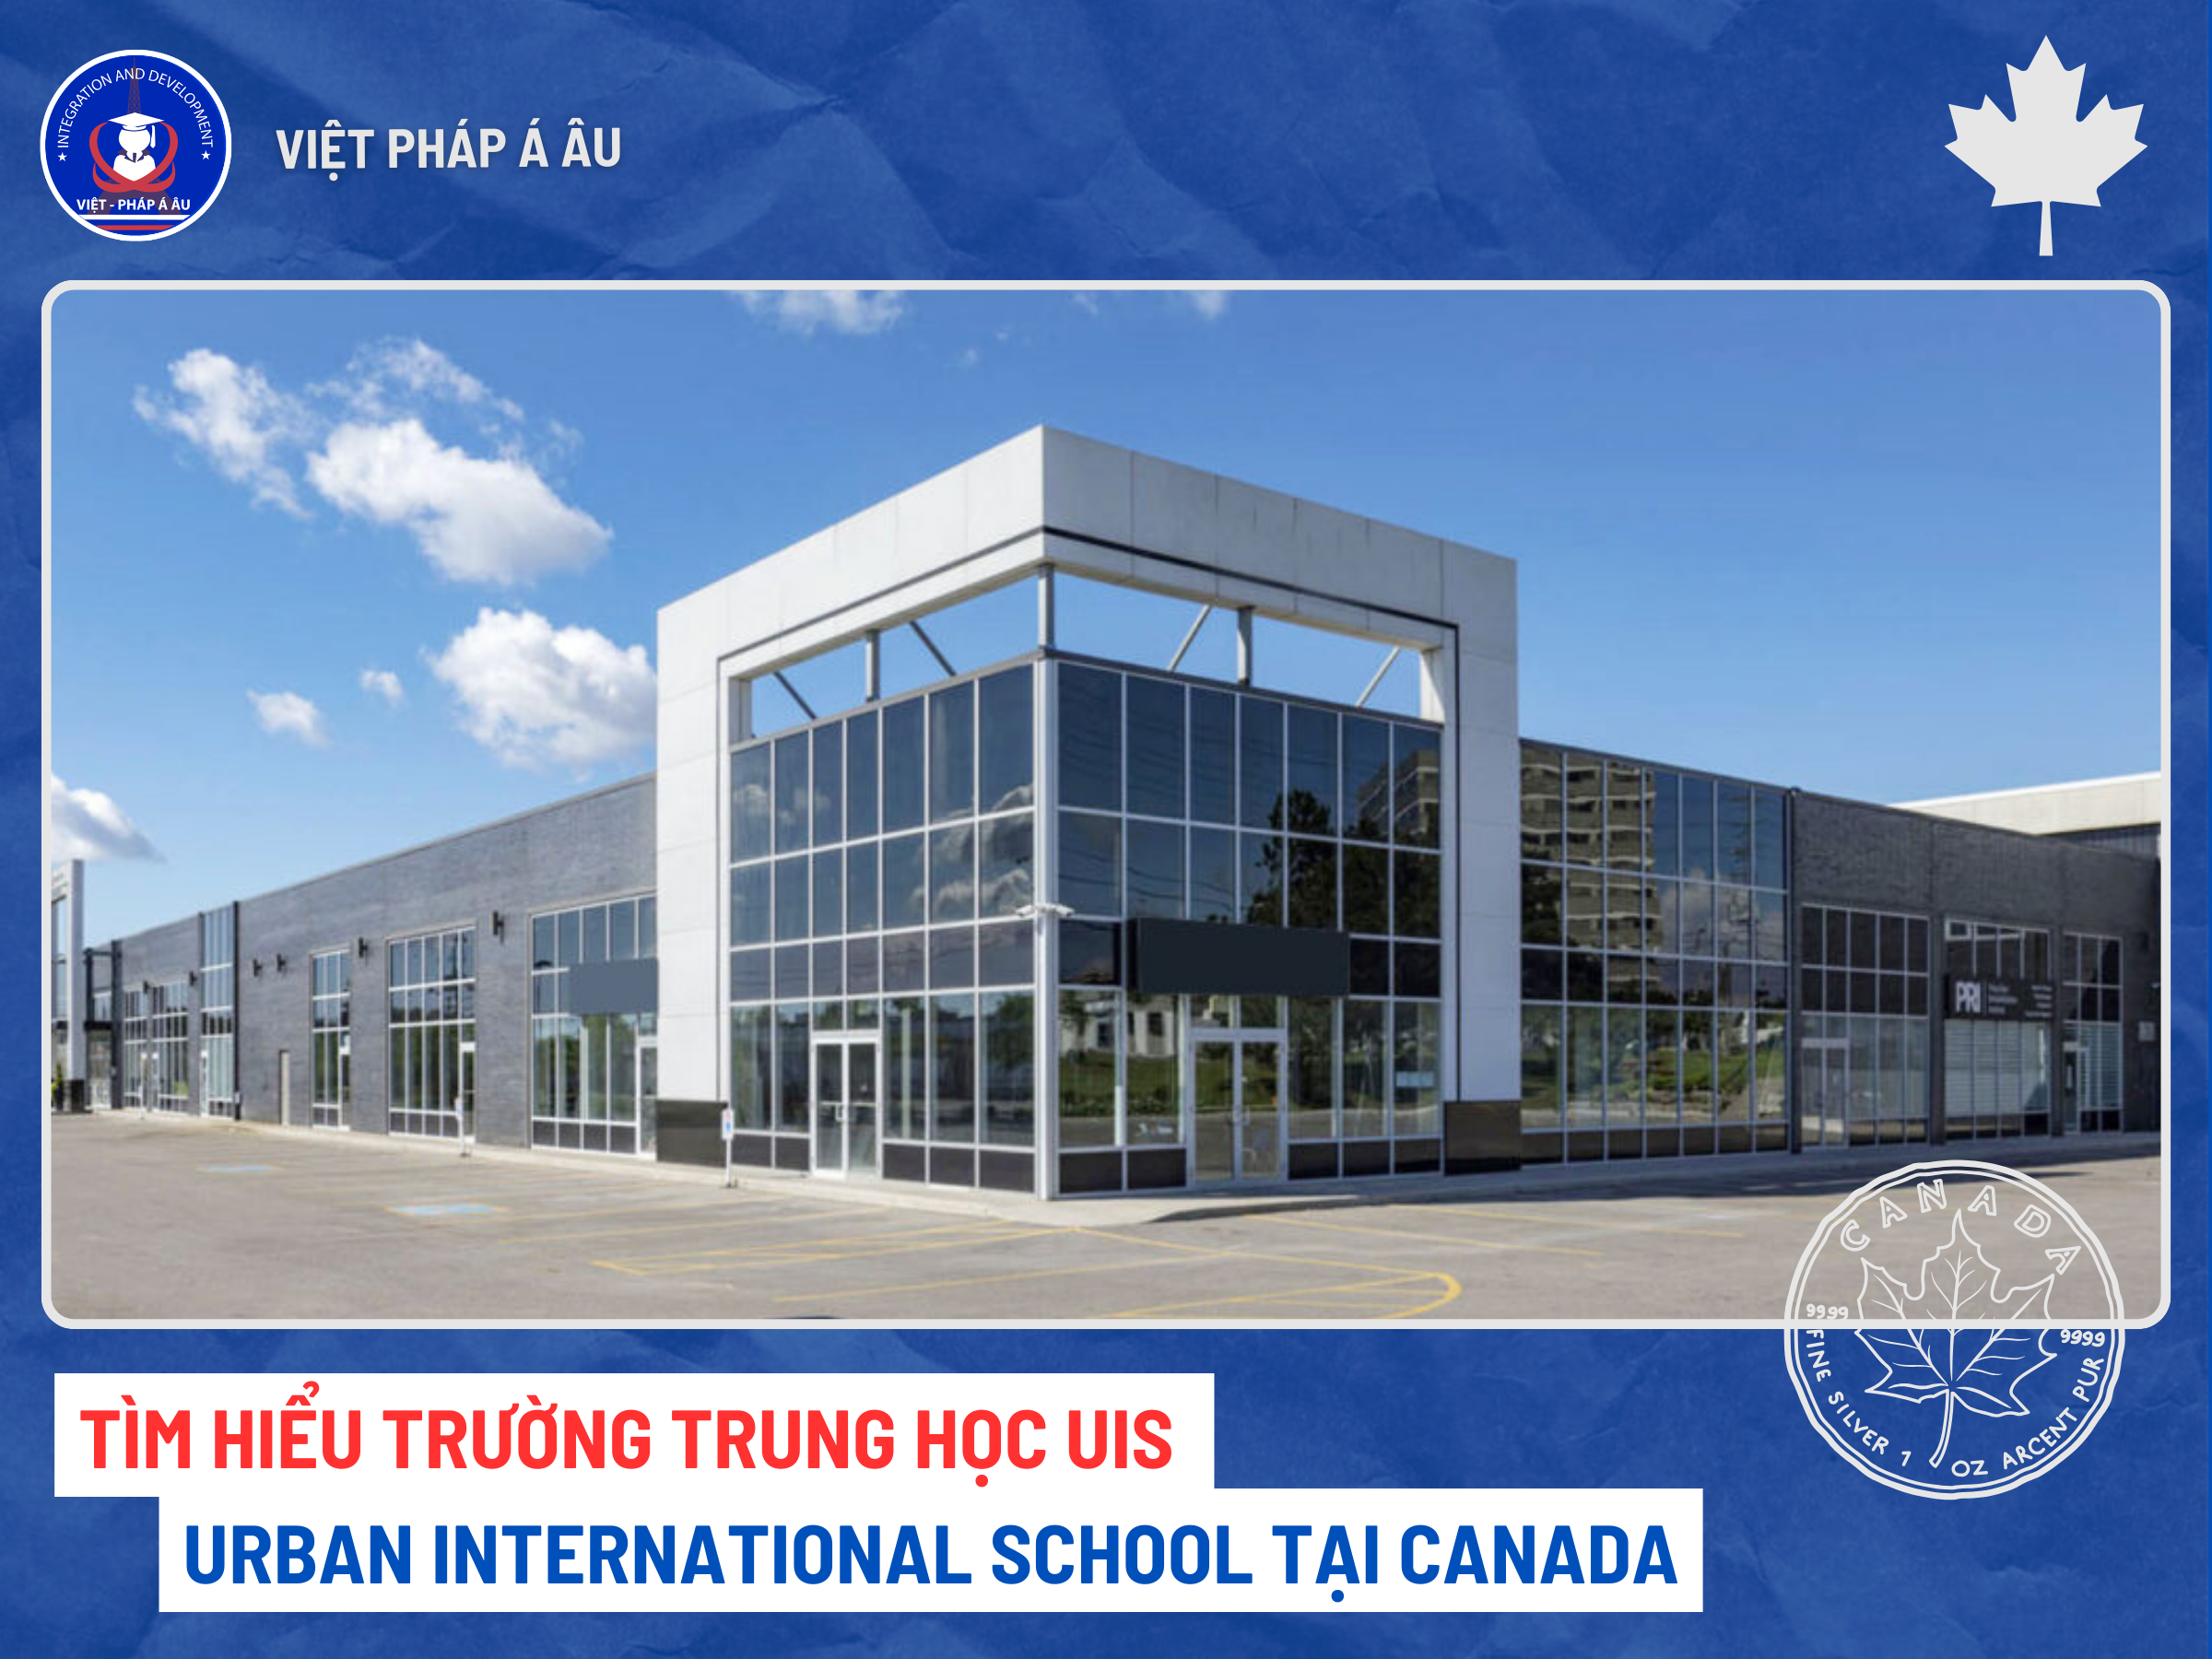 URBAN INTERNATIONAL SCHOOL TẠI CANADA